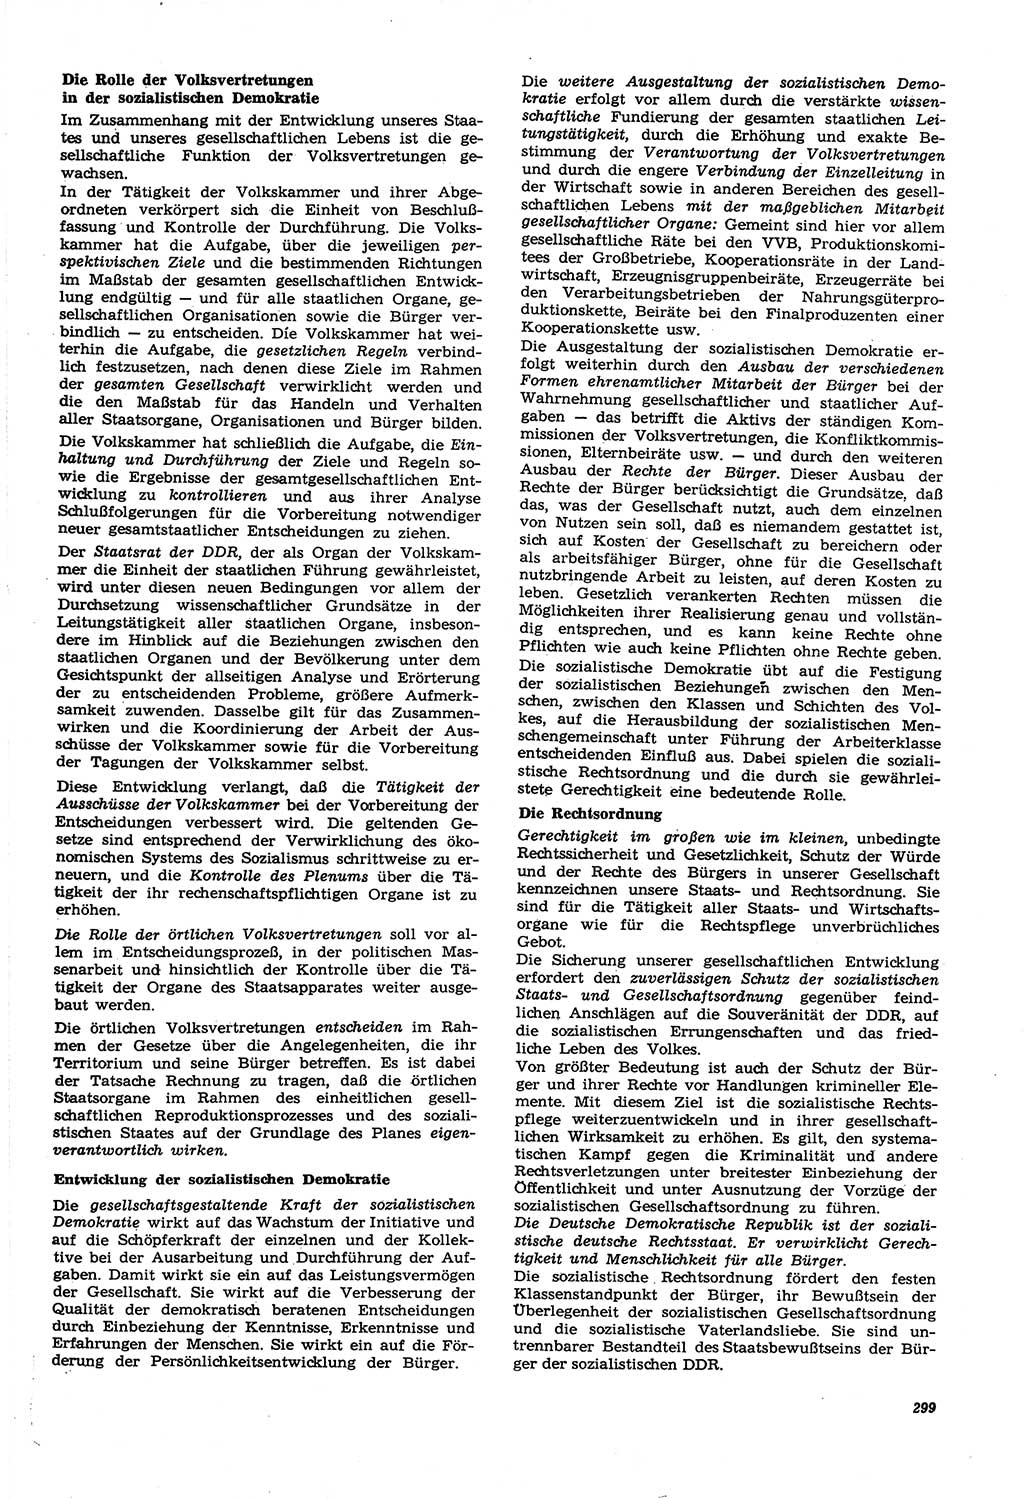 Neue Justiz (NJ), Zeitschrift für Recht und Rechtswissenschaft [Deutsche Demokratische Republik (DDR)], 21. Jahrgang 1967, Seite 299 (NJ DDR 1967, S. 299)